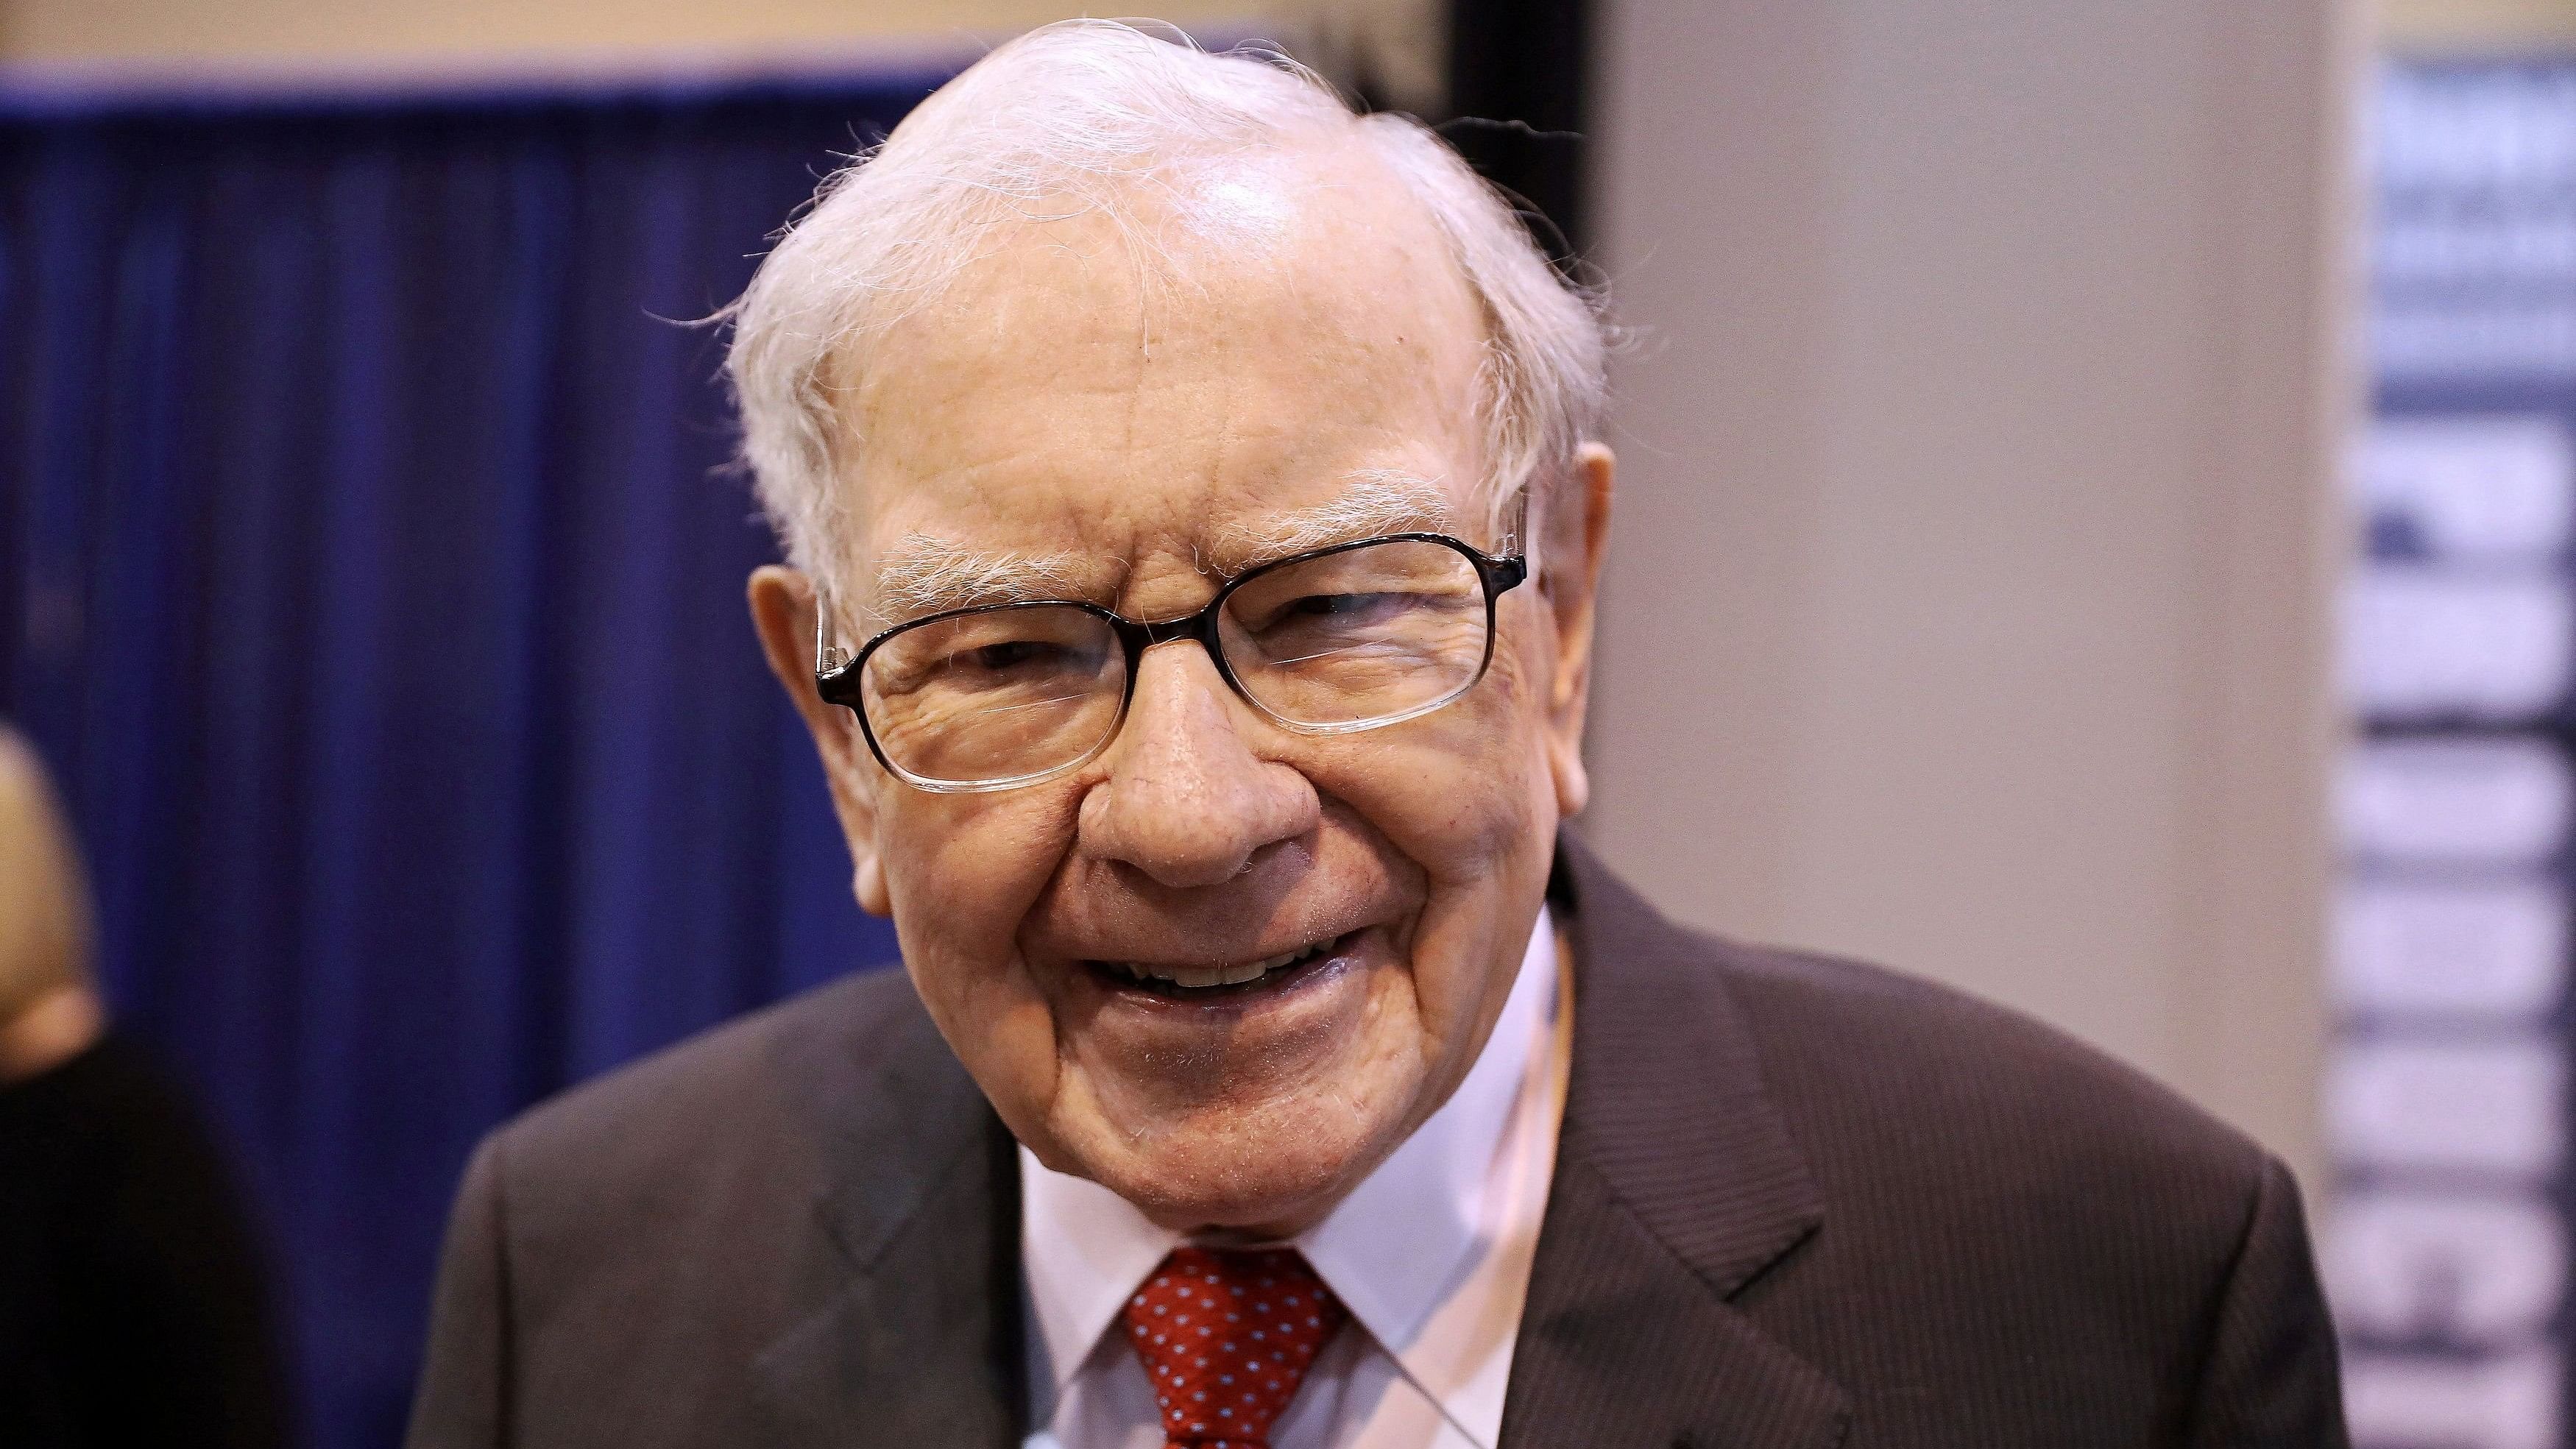 <div class="paragraphs"><p>Berkshire Hathaway Chairman Warren Buffett.</p></div>